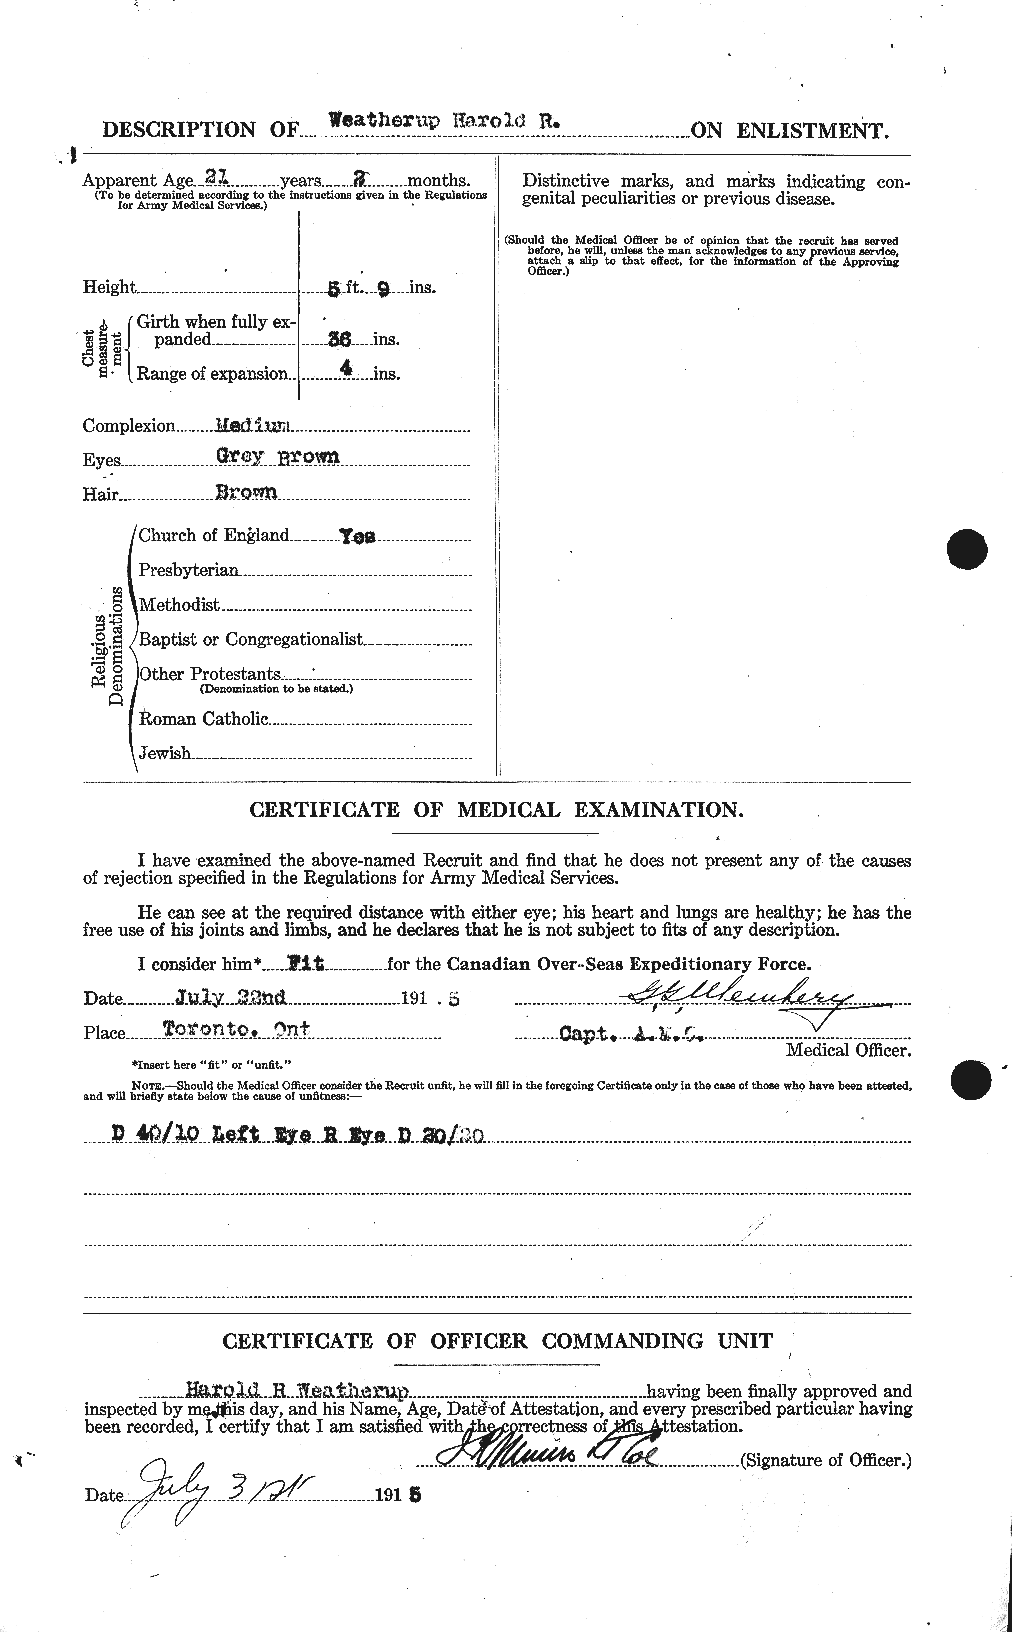 Dossiers du Personnel de la Première Guerre mondiale - CEC 664287b